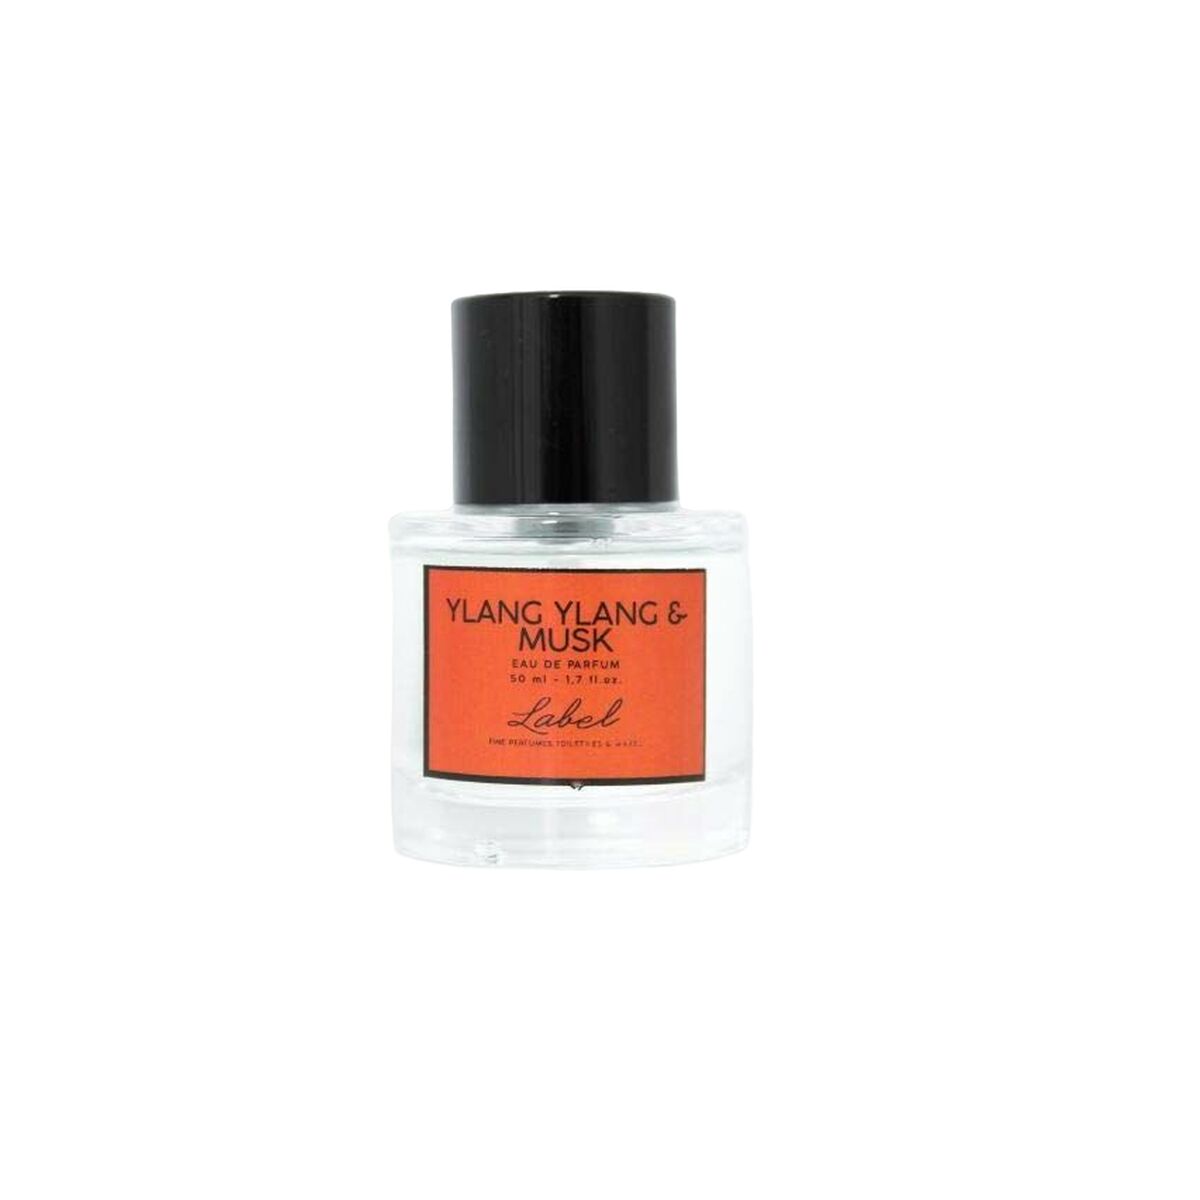 Parfum Unisex Label EDP Ylang Ylang & Musk (50 ml)